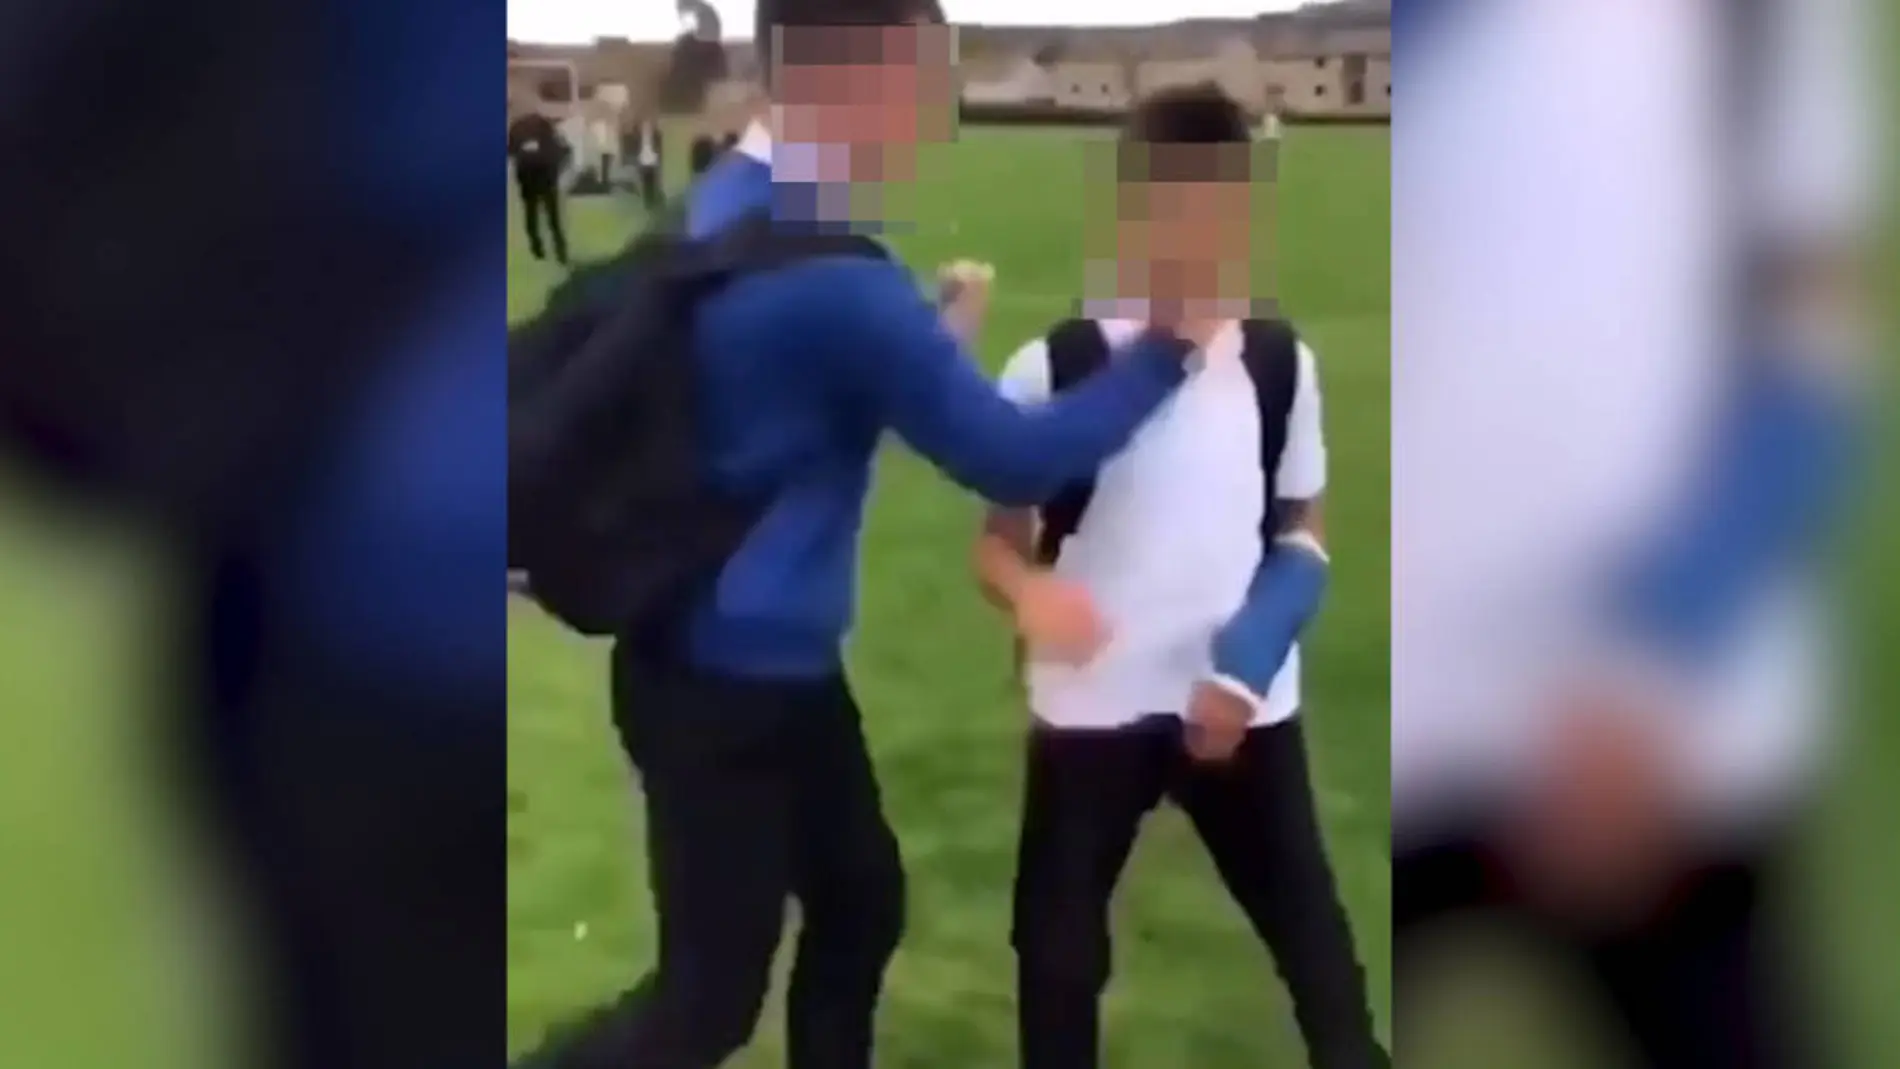 Captura del momento que el estudiante sirio sufre bullying por un alumno inglés / YouTube